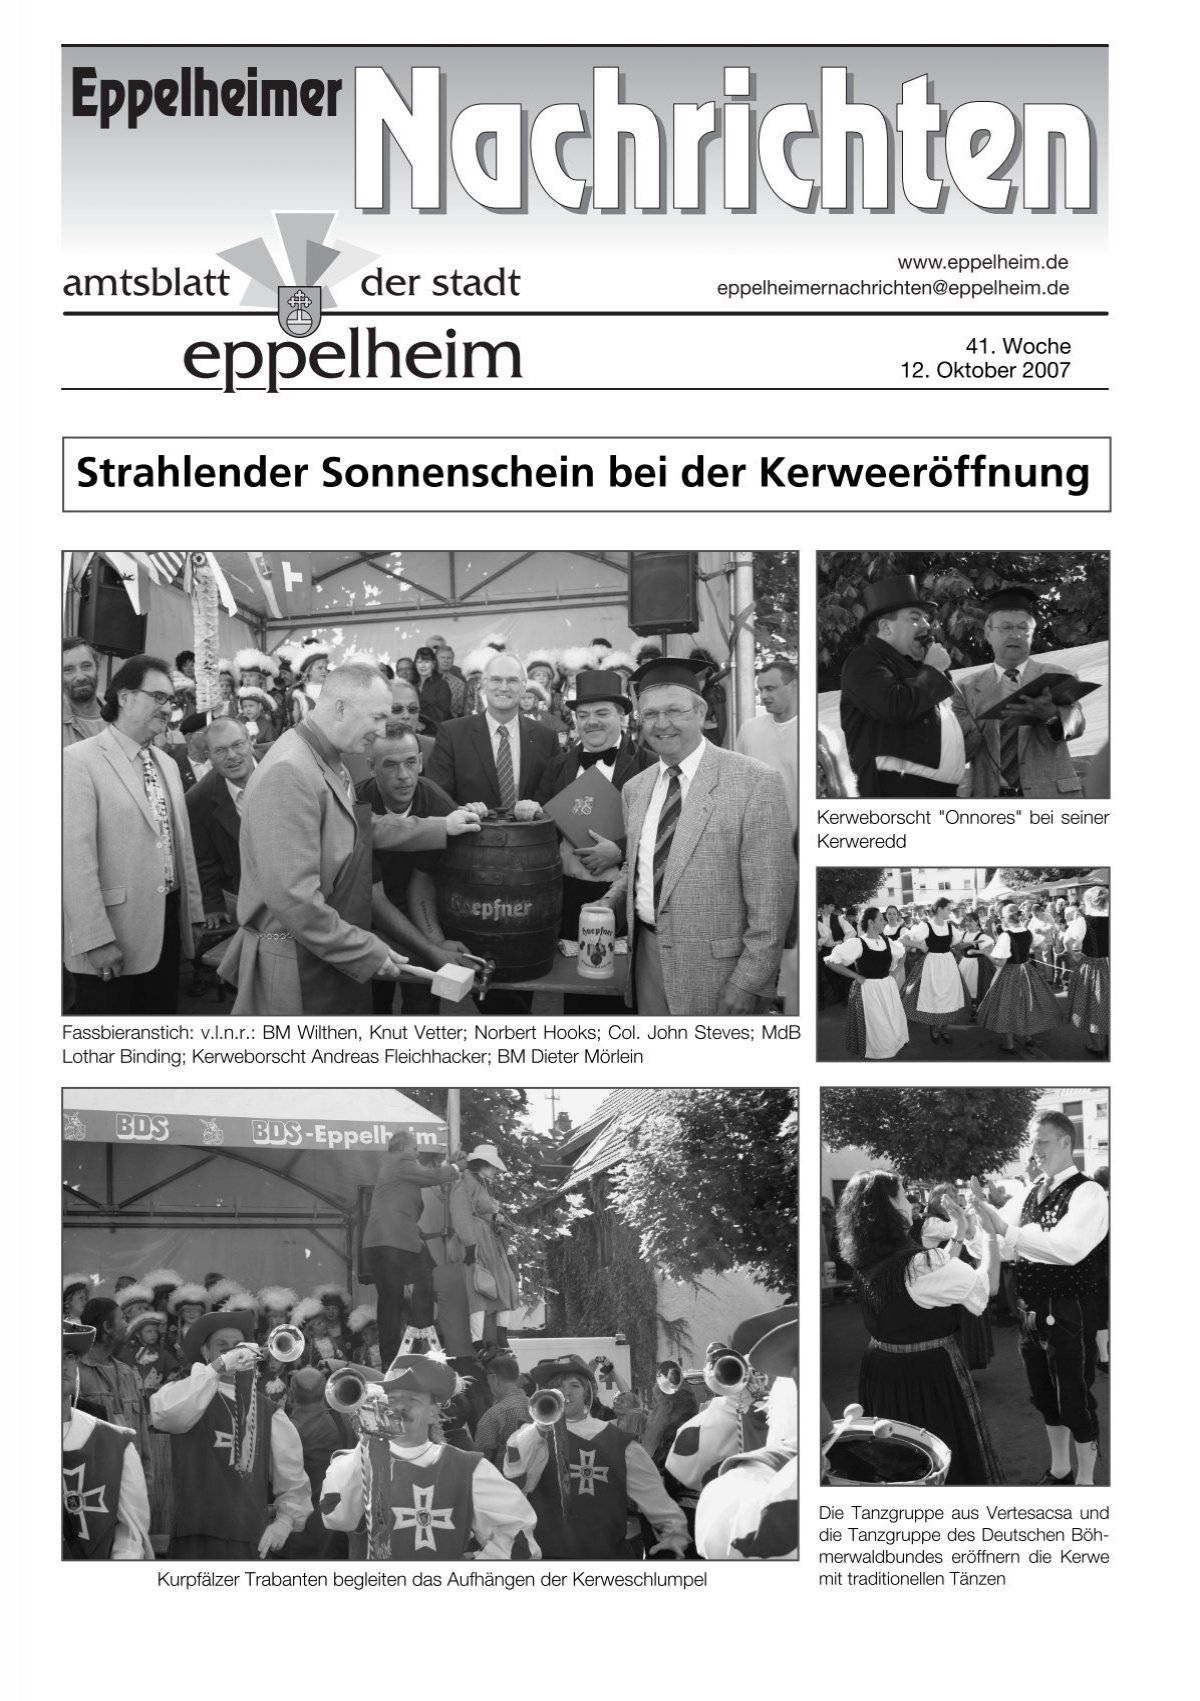 Bonhoeffer Gymnasiums Eppelheim Feiert Sein 25jahriges Bestehen